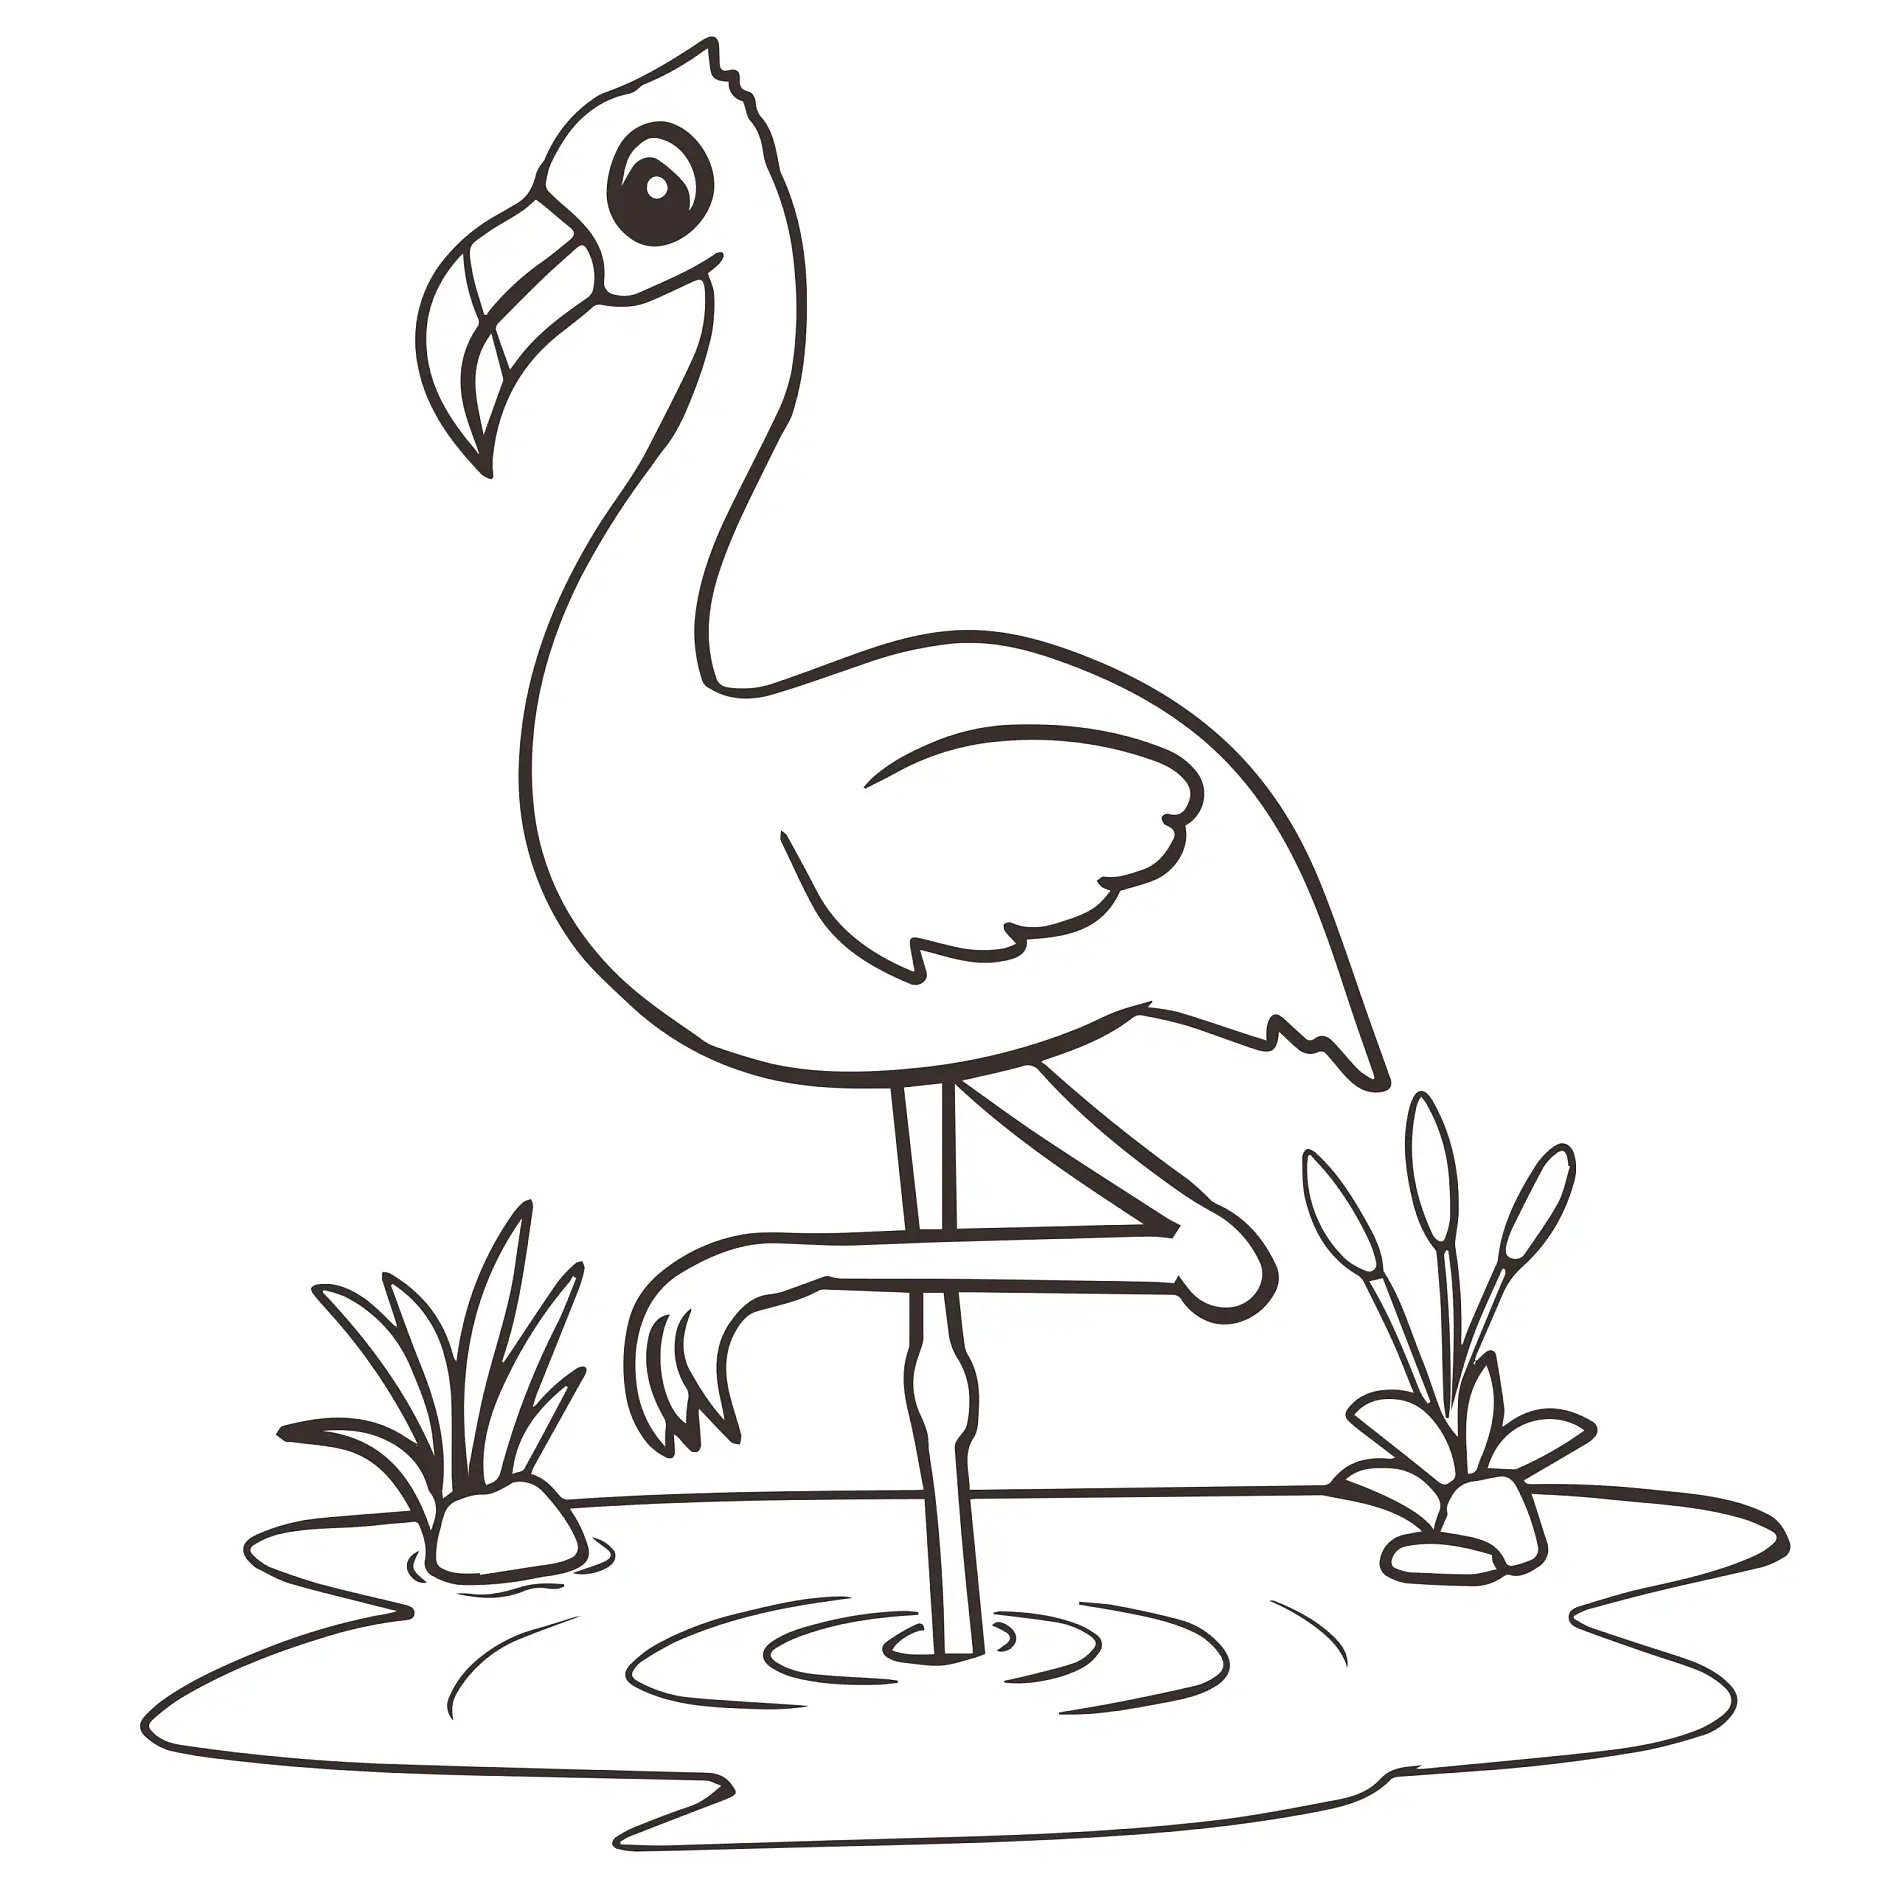 Ausmalbild Flamingo steht auf einem Bein im Wasser